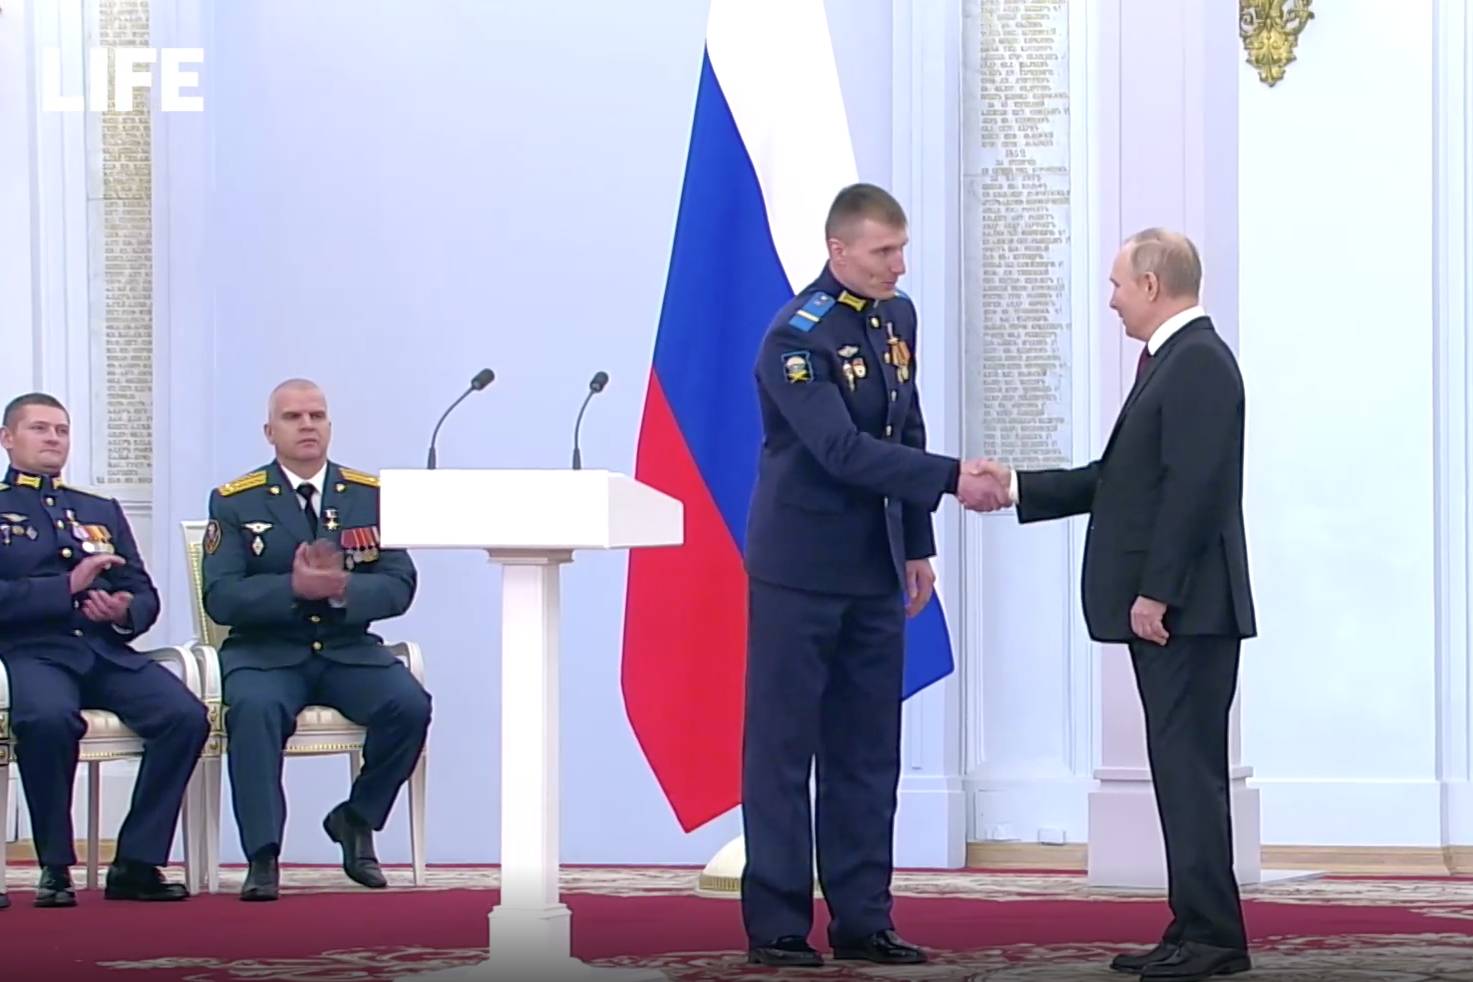 Мать растерявшегося на церемонии в Кремле бойца назвала его награду заслуженной